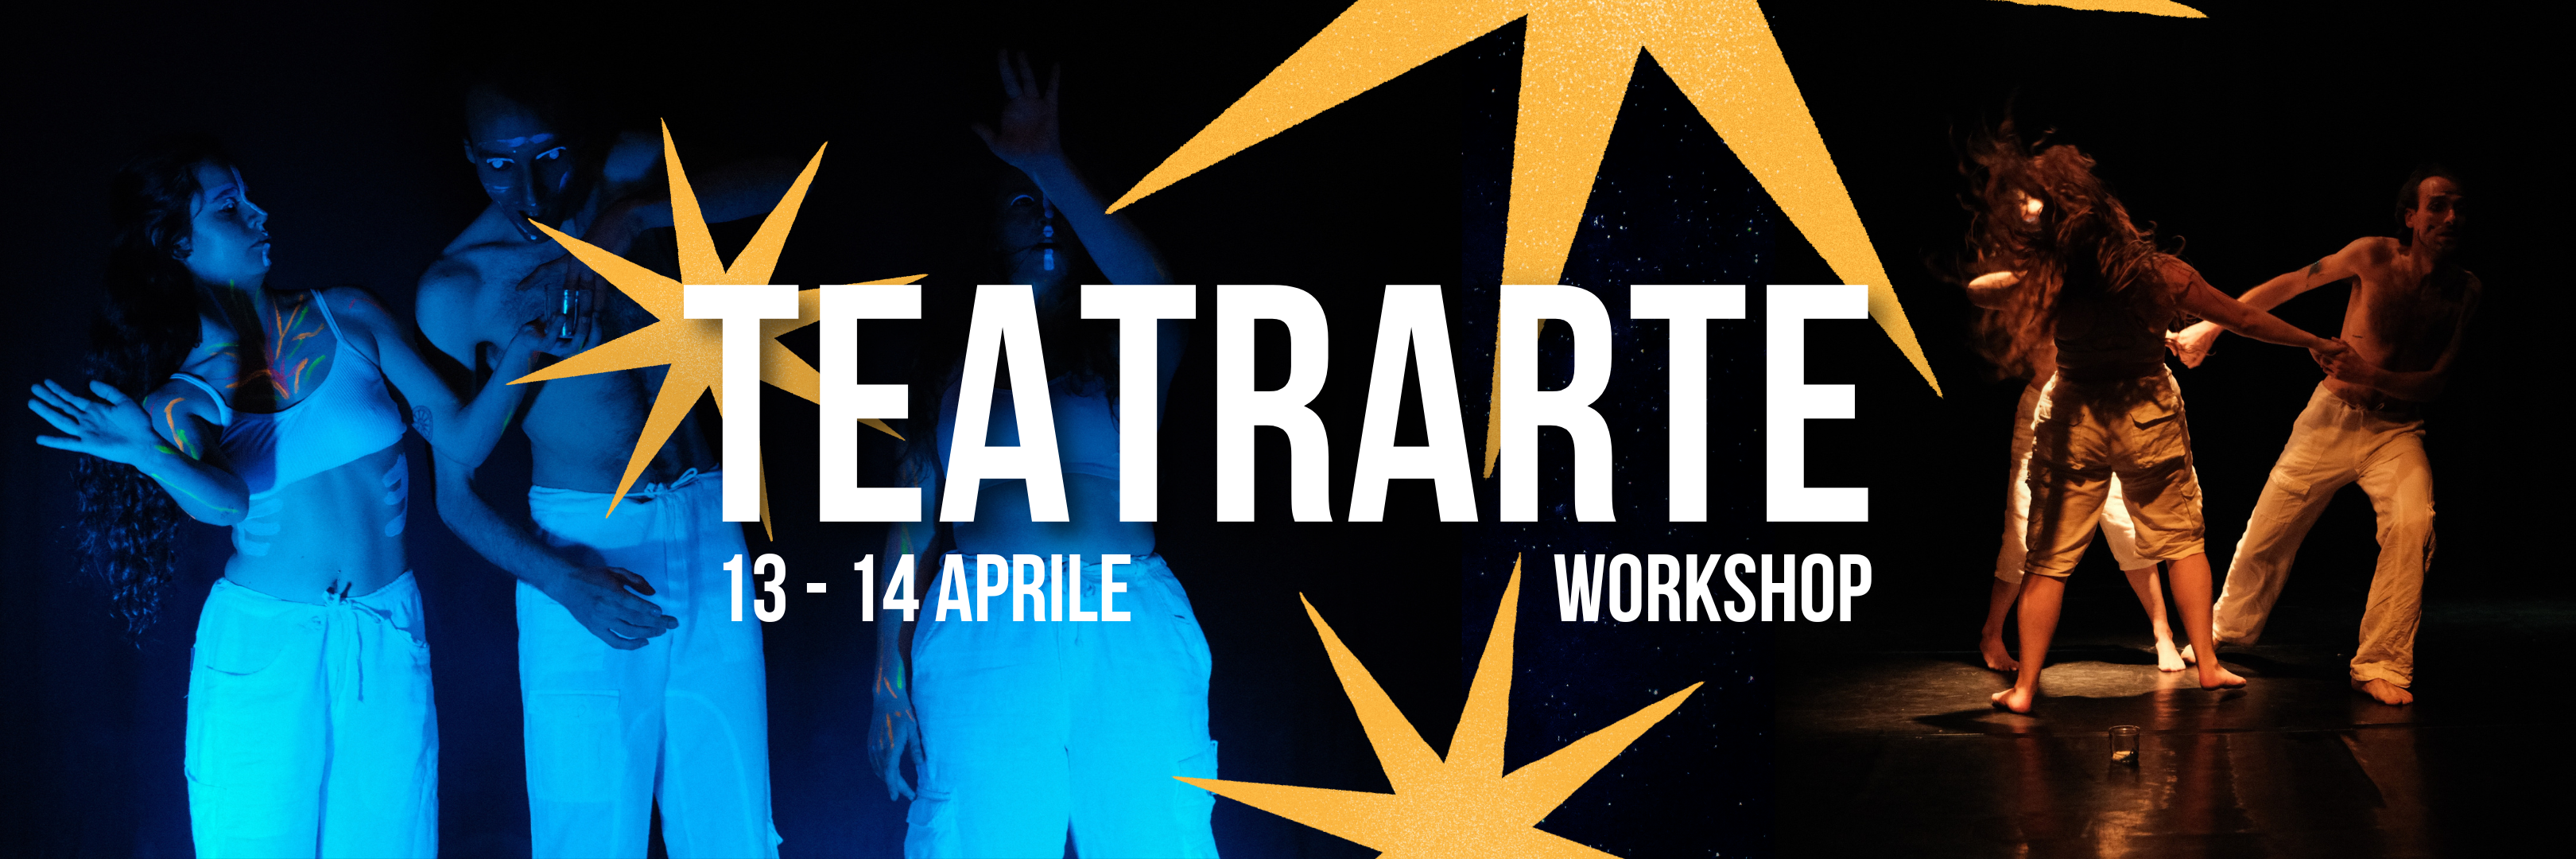 Workshop TEATRARTE – 13/14 Aprile